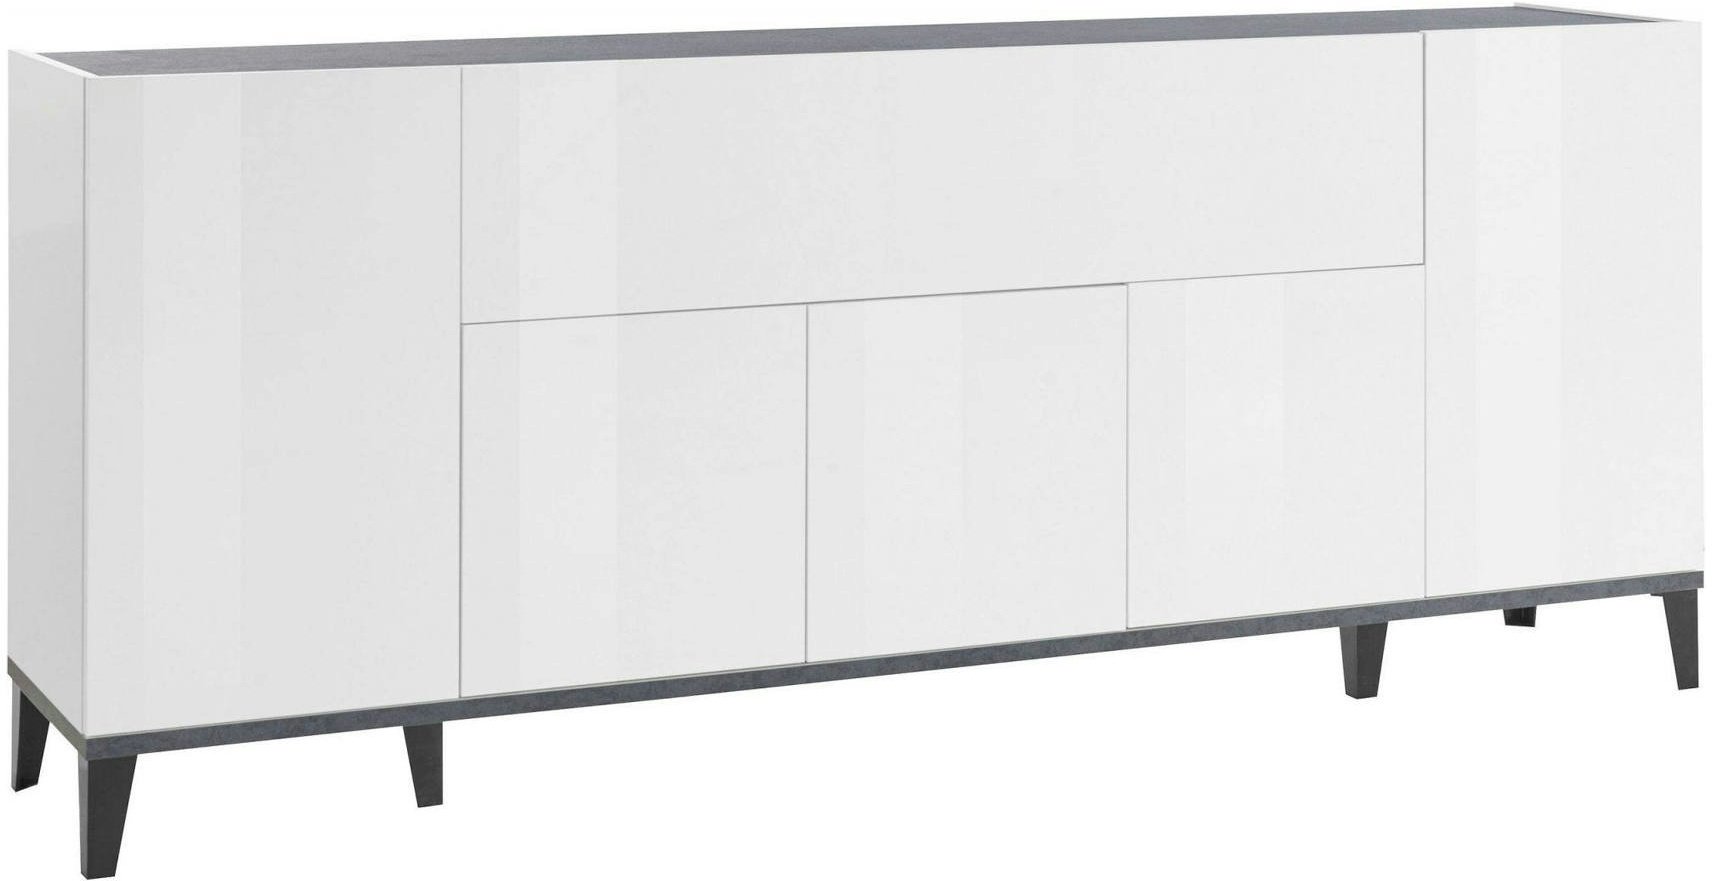 Dmora Kommode Vittorio, Küchen-Sideboard mit 6 Türen, Wohnzimmer-Buffet, 100 % Made in Italy, cm 200x40h82, Weiß glänzend und Schiefer